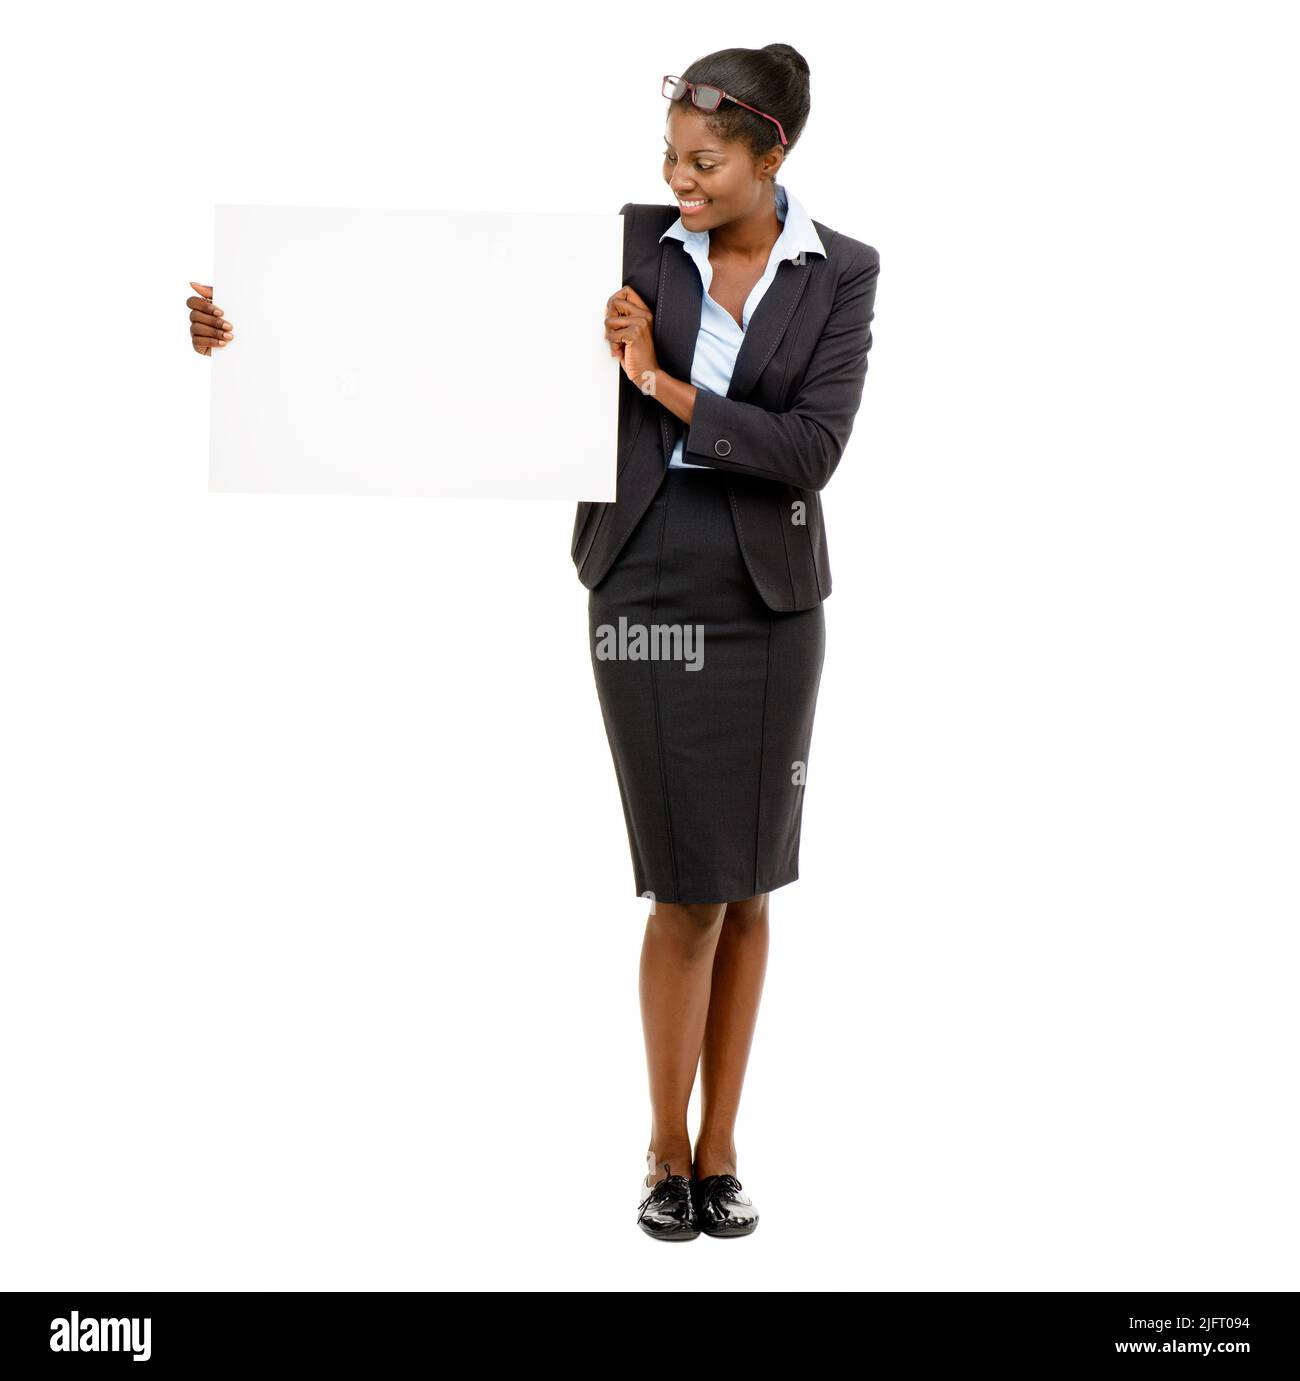 Eine Marke, mit der es sich lohnt, in Verbindung zu bleiben. Aufnahme einer jungen Geschäftsfrau, die ein leeres Schild vor einem weißen Studiohintergrund hält. Stockfoto